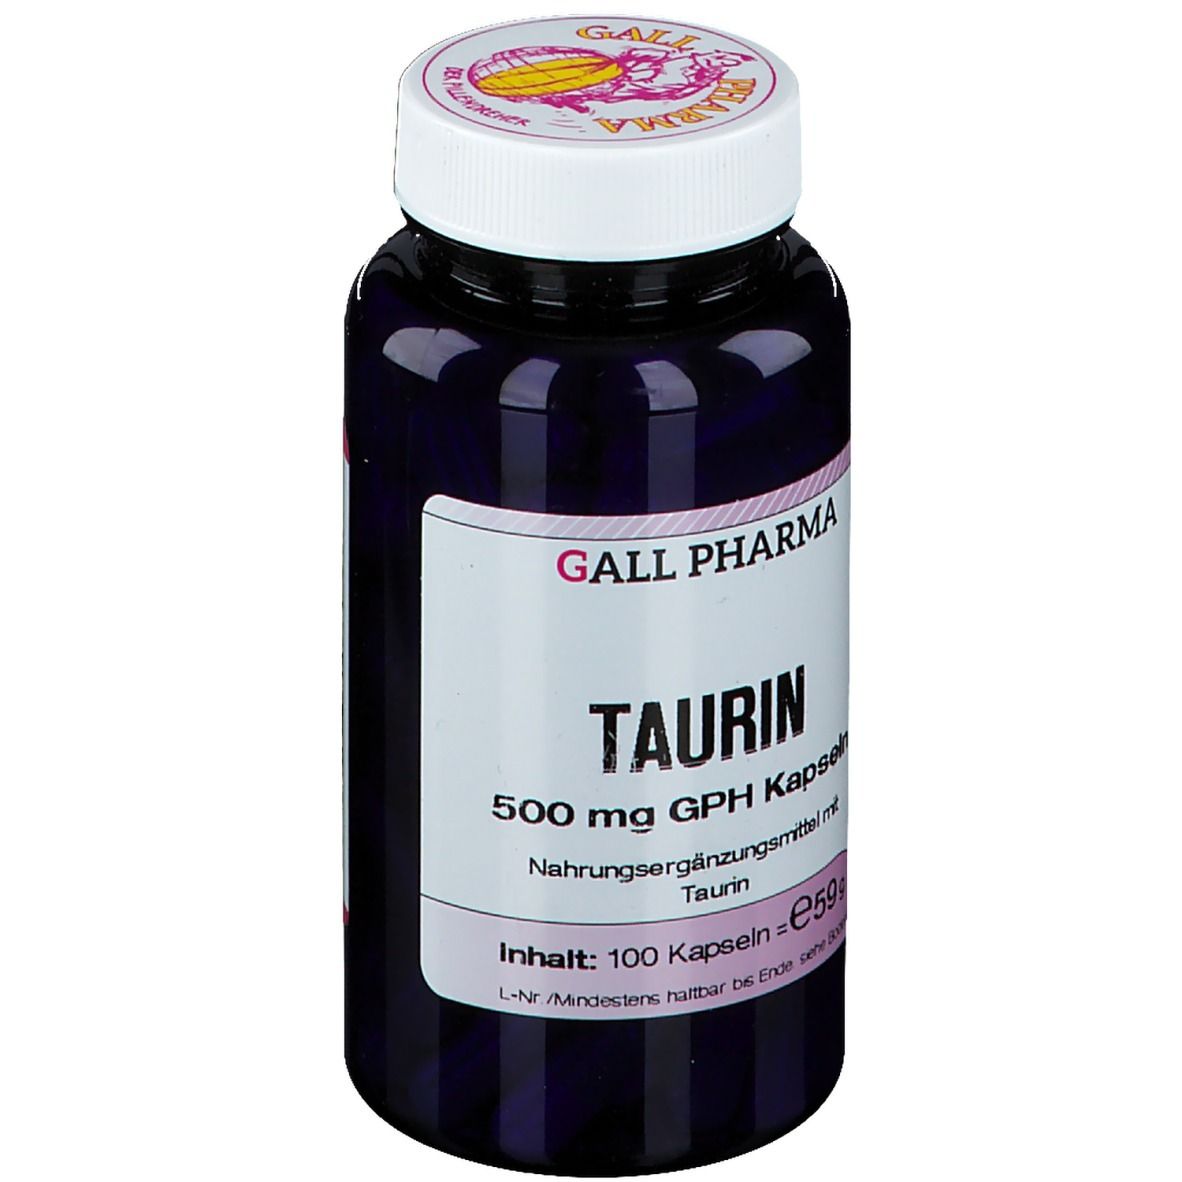 GALL PHARMA Taurin 500 mg